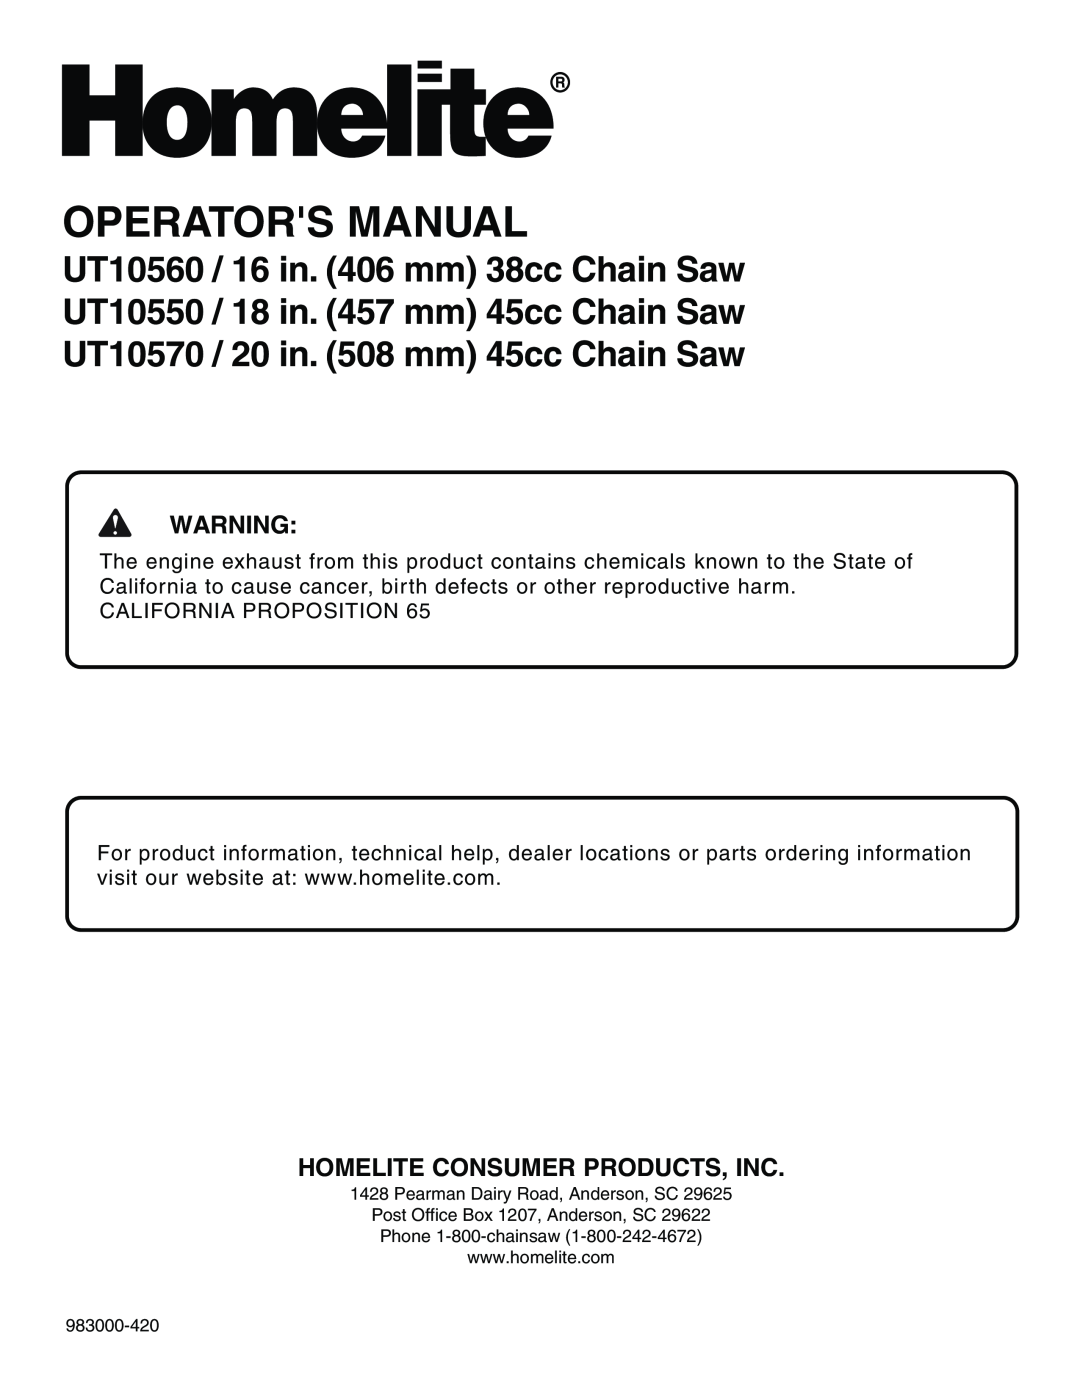 Homelite UT10570 manual Homelite Consumer Products, Inc, Operators Manual 